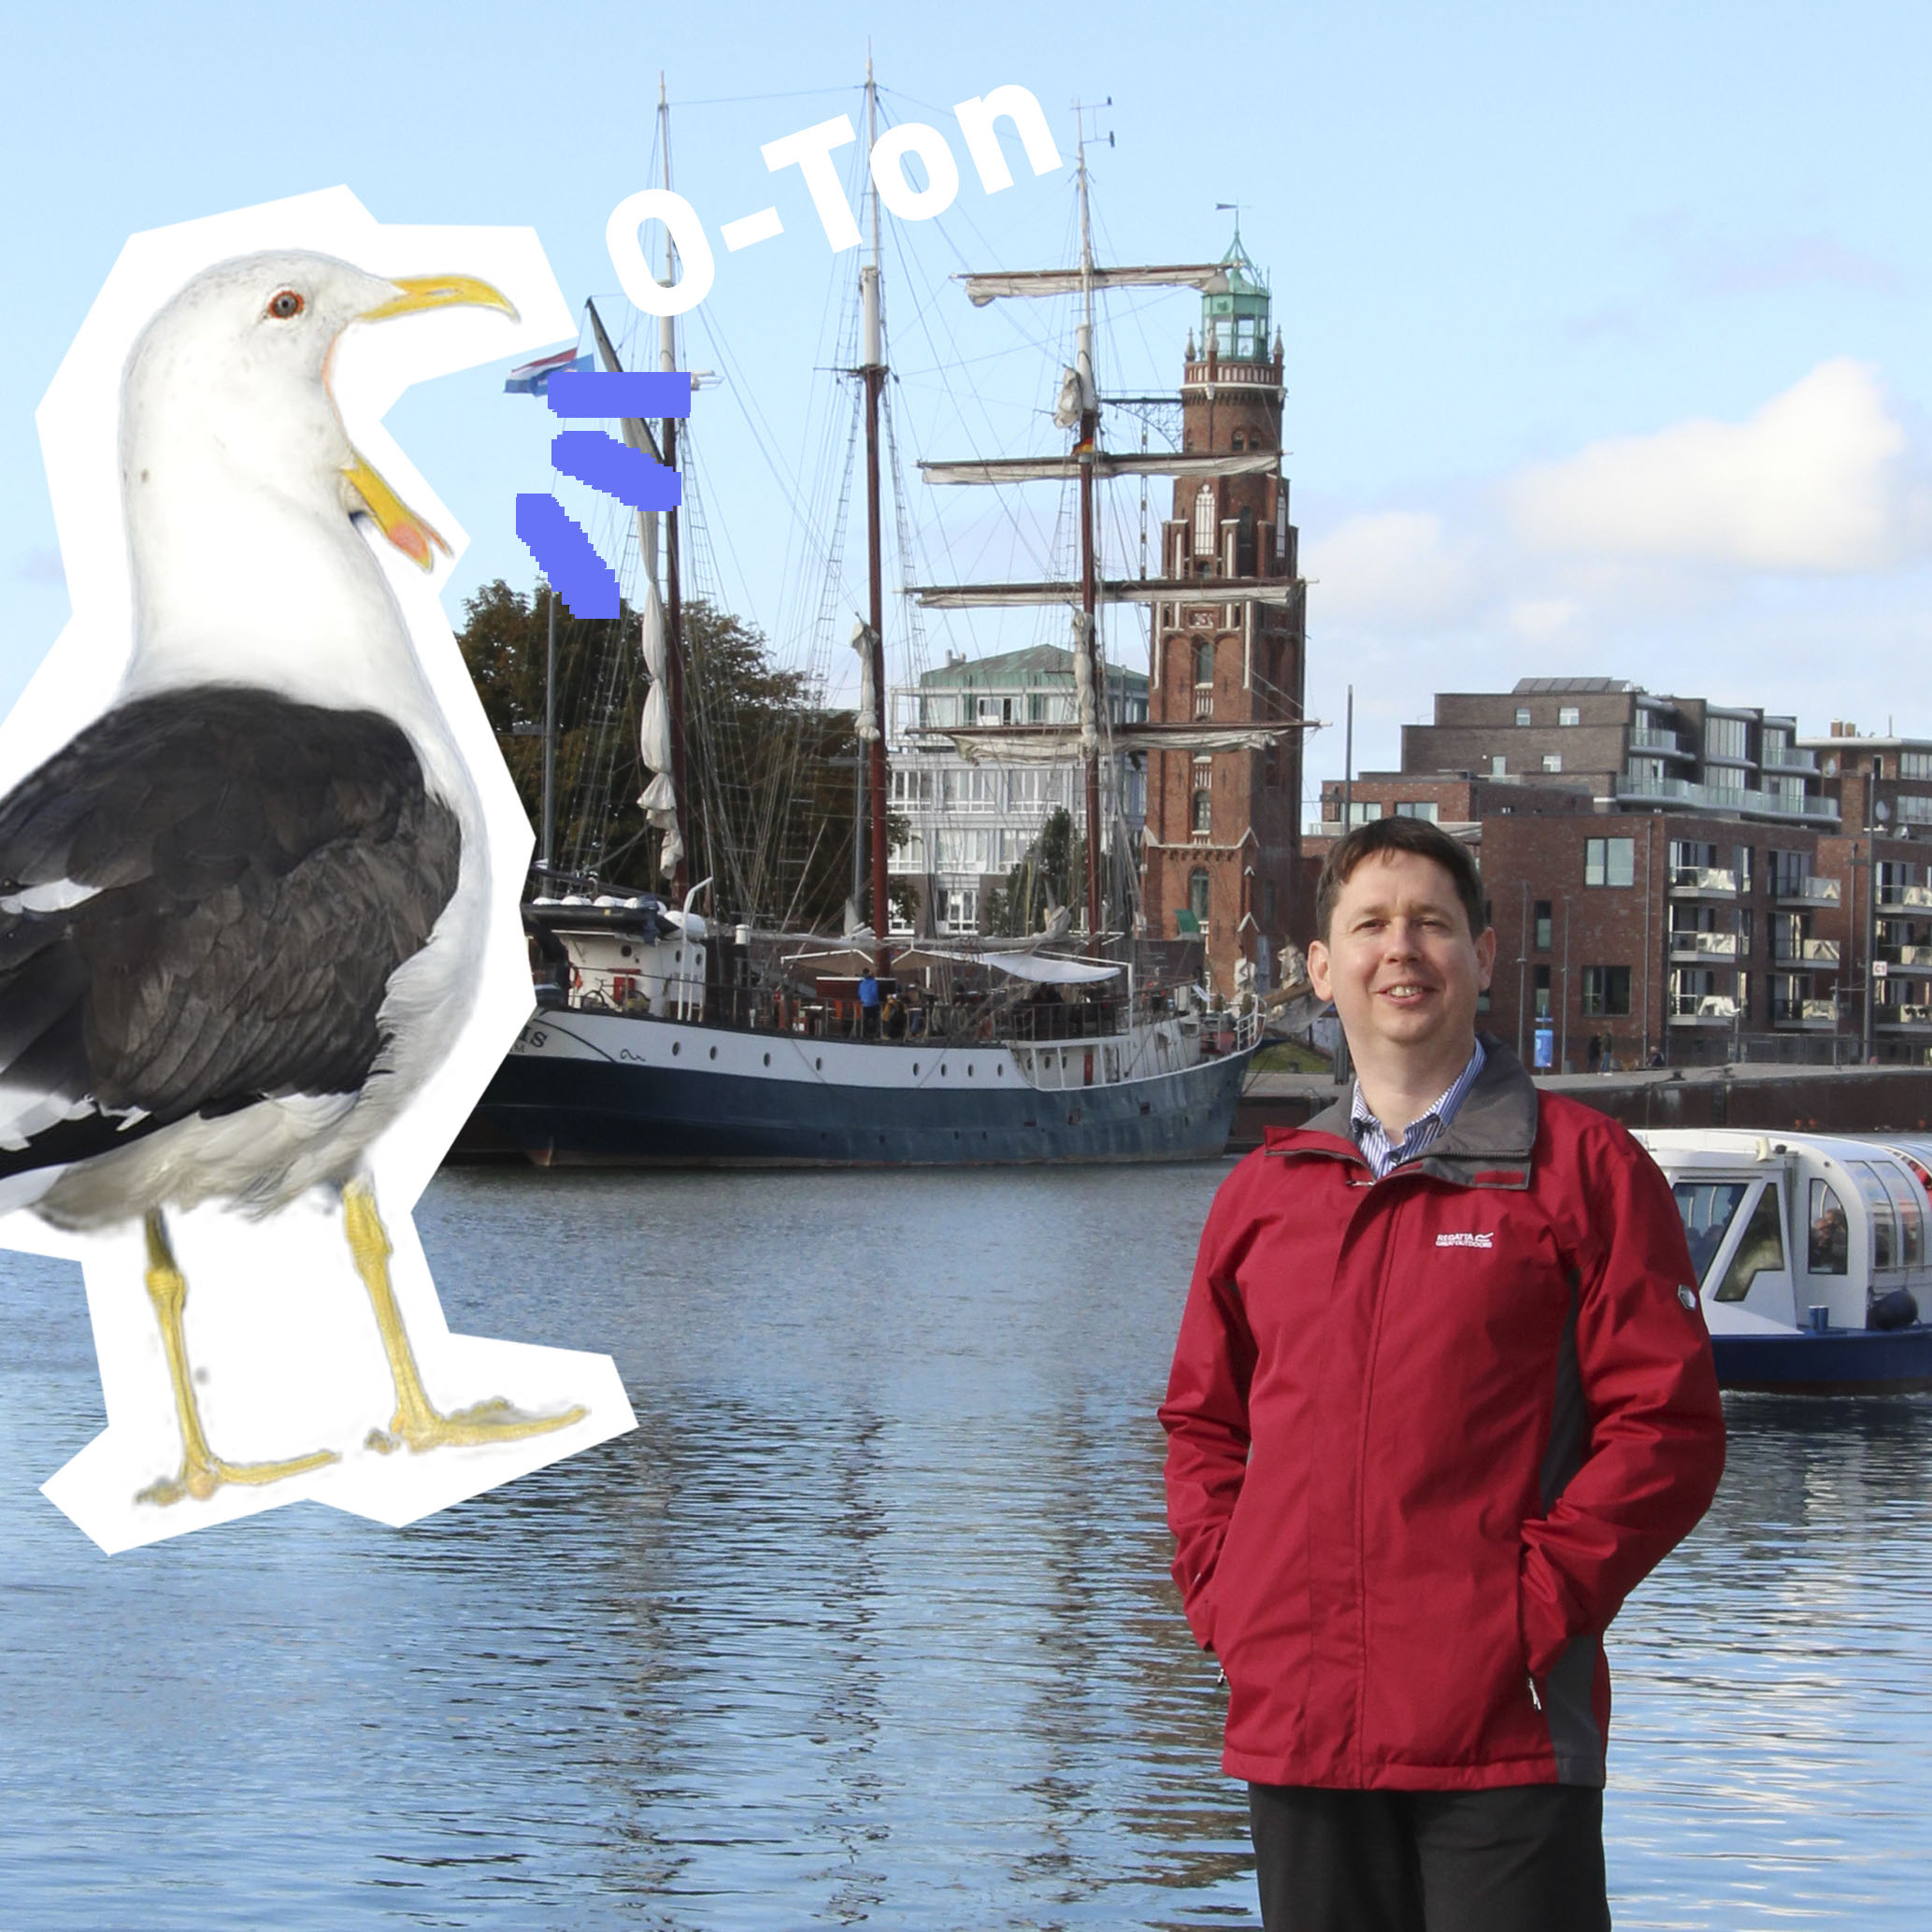 Dr. Marc Bläsing am Neuen Hafen mit dem Text "O-Ton" und der Grafik einer kreischenden Möwe